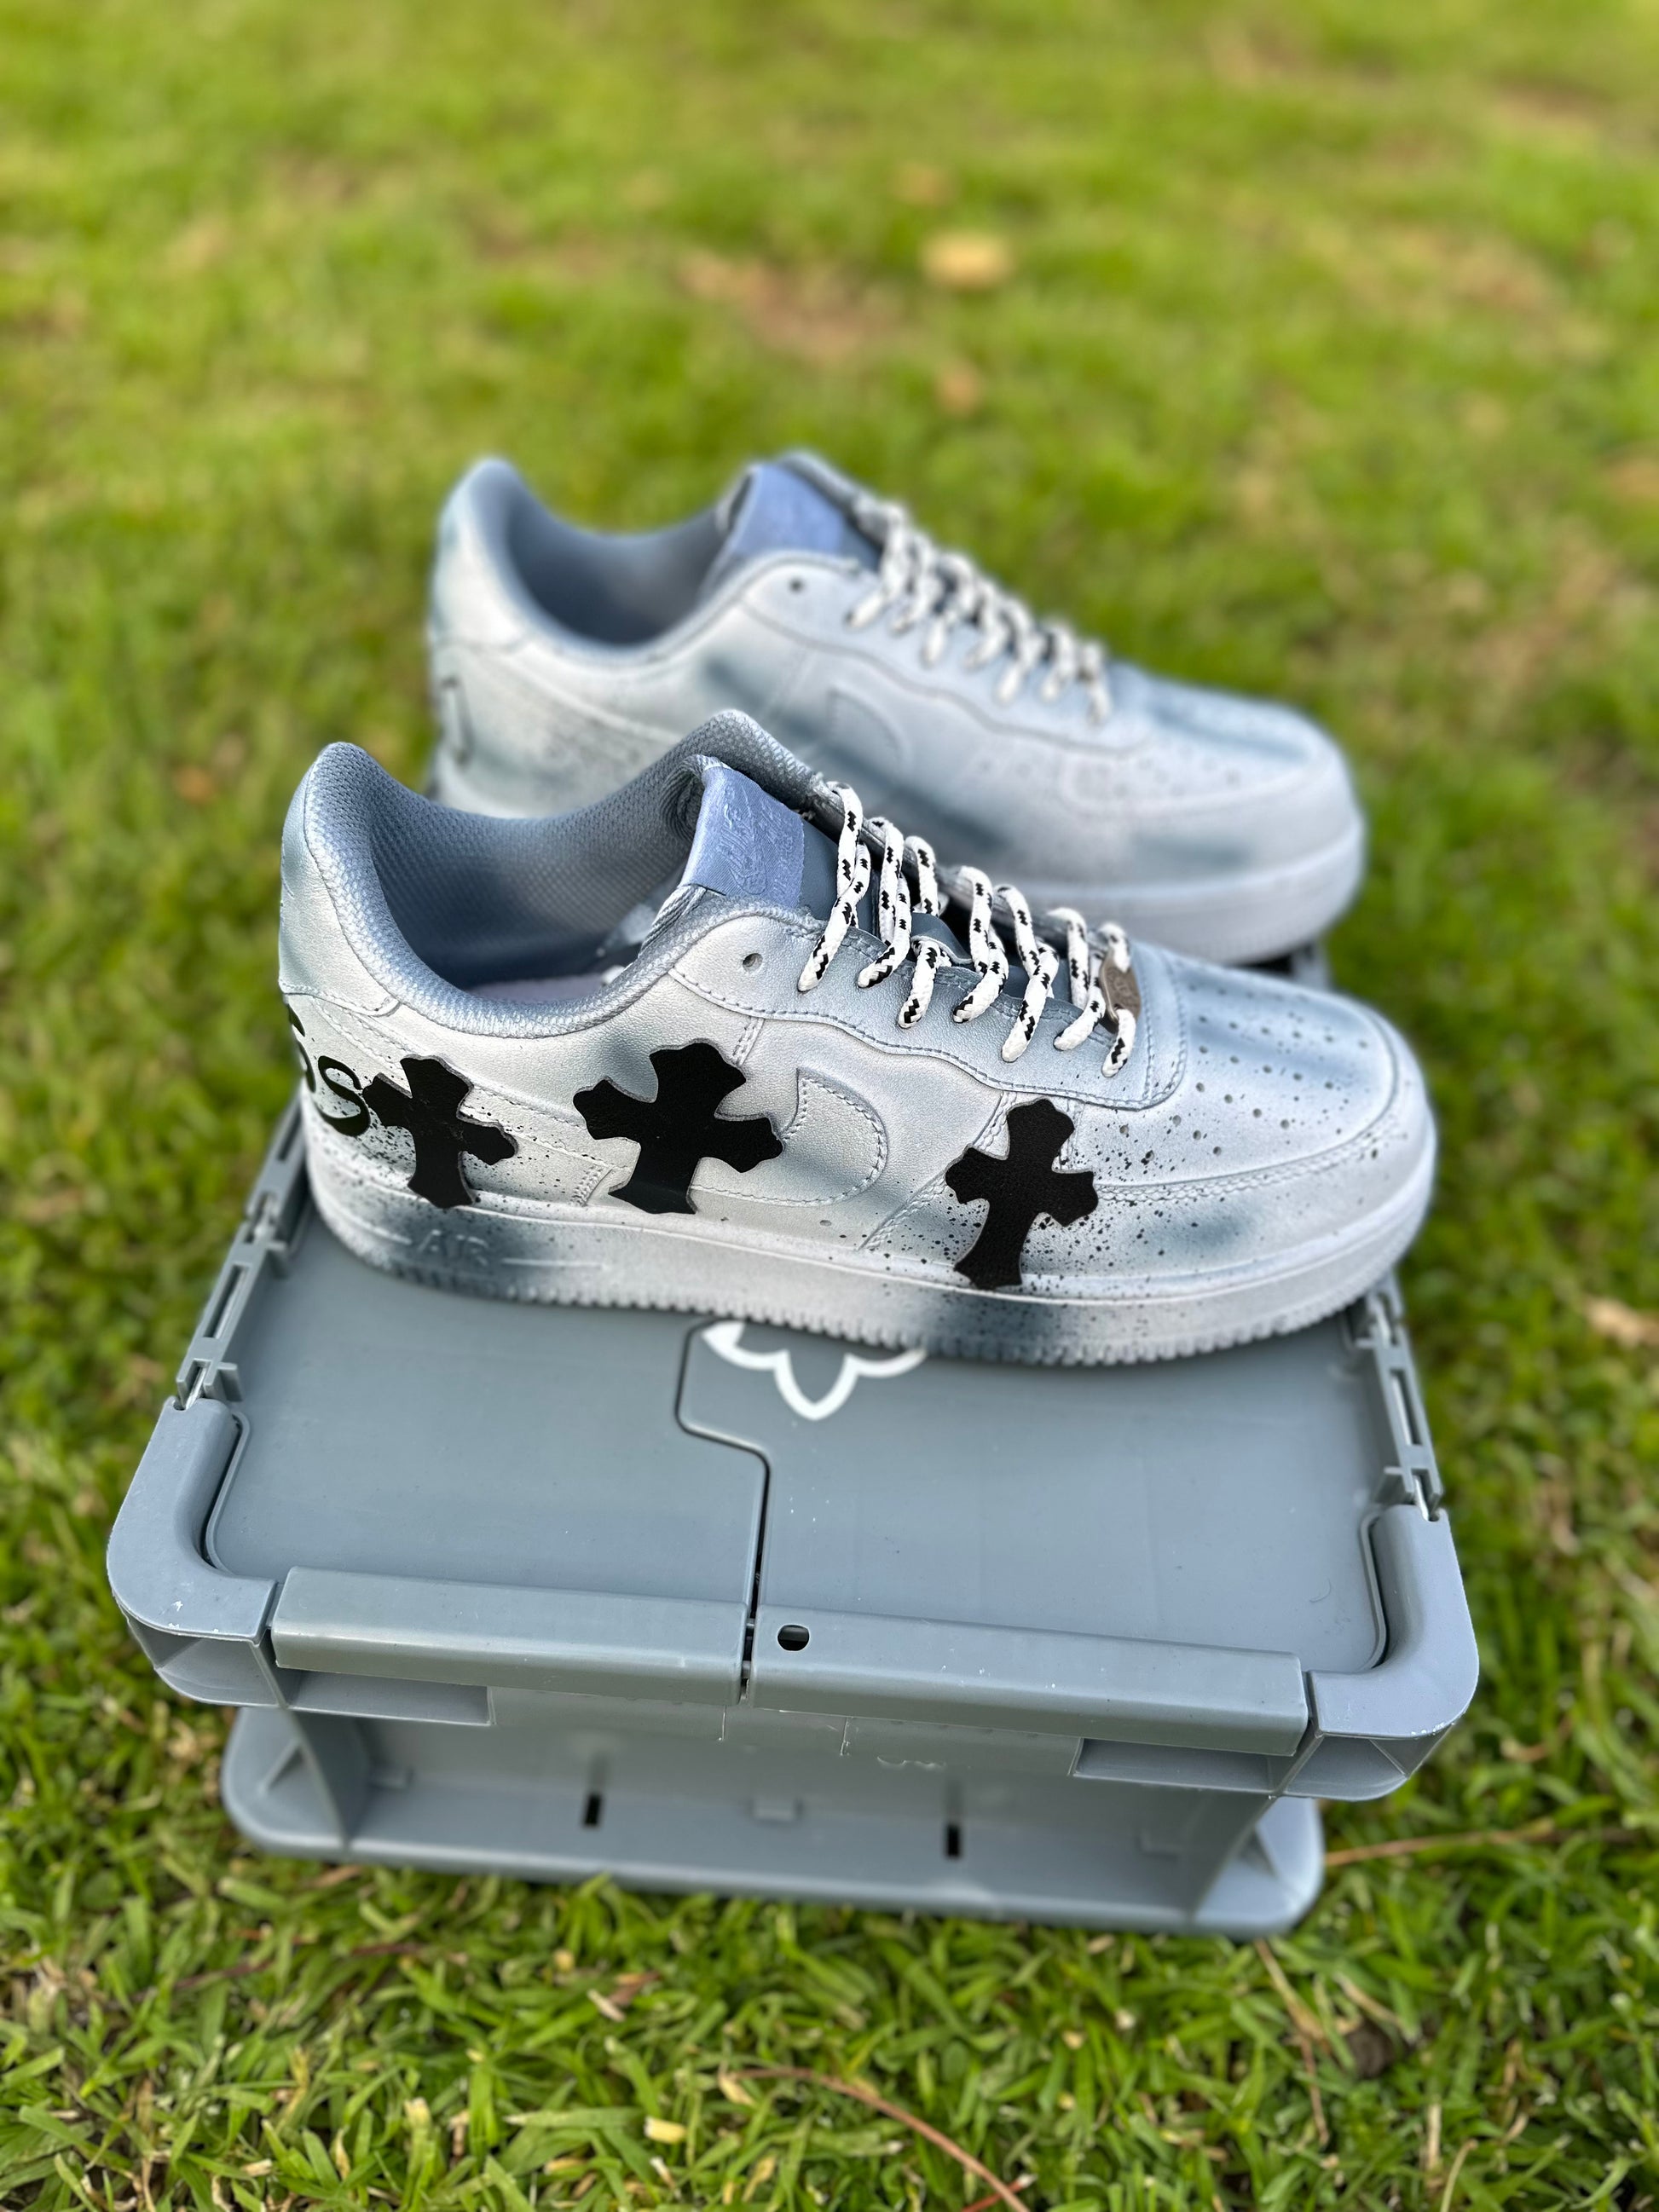 Louis Vuitton Nike Air Force 1 Chrome Toe Sneaker